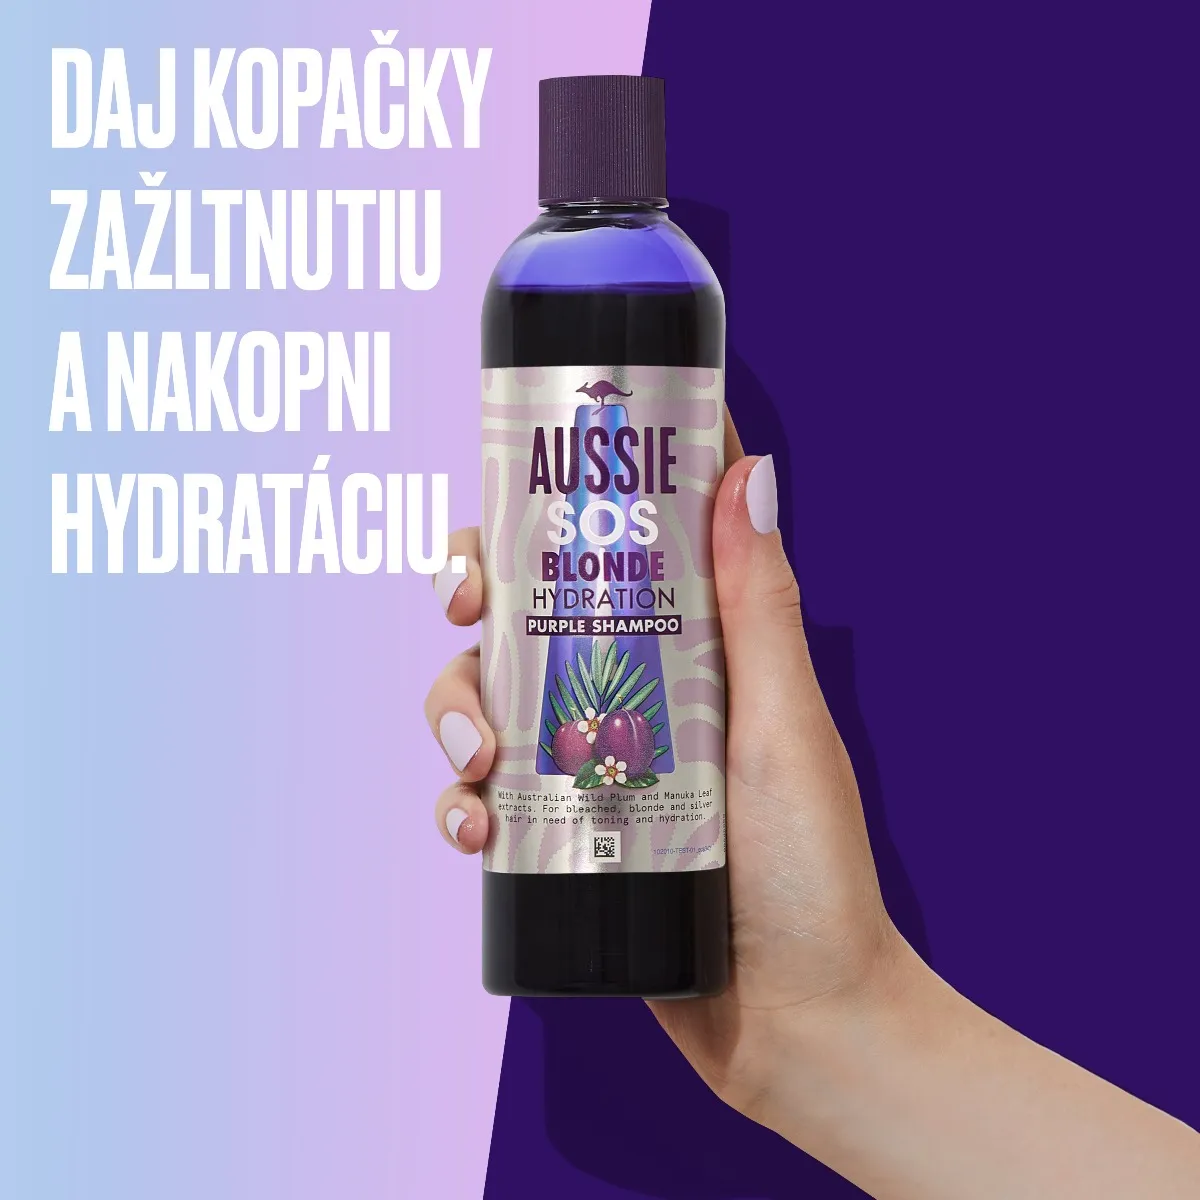 Aussie SOS Blonde Hydratačný fialový šampón 1×290ml, hydratačný šampón